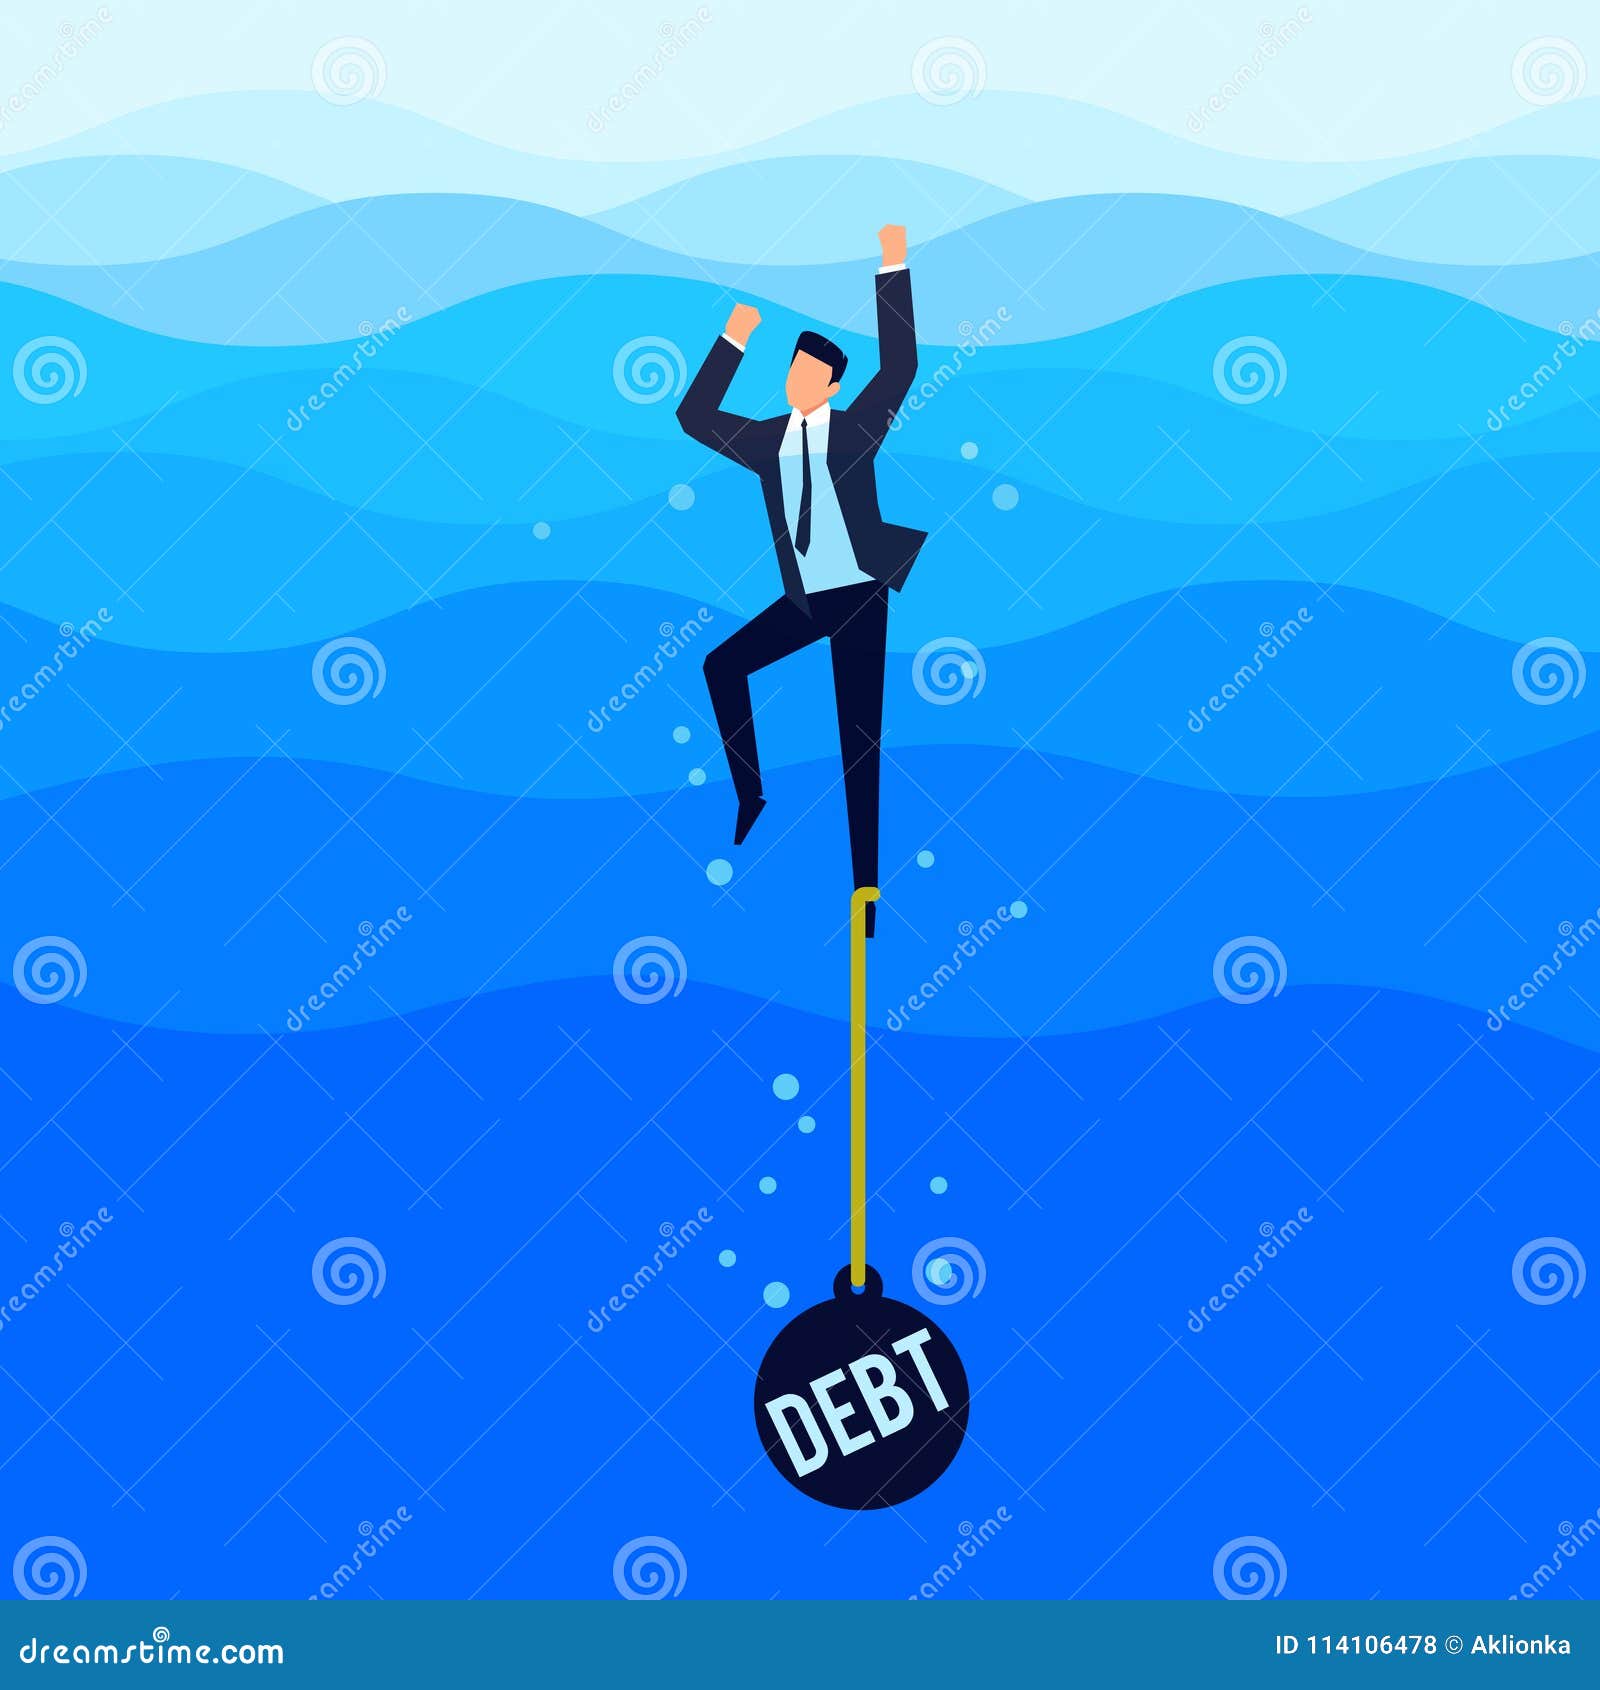 debtor. debt concept. businessman drowns in the sea.